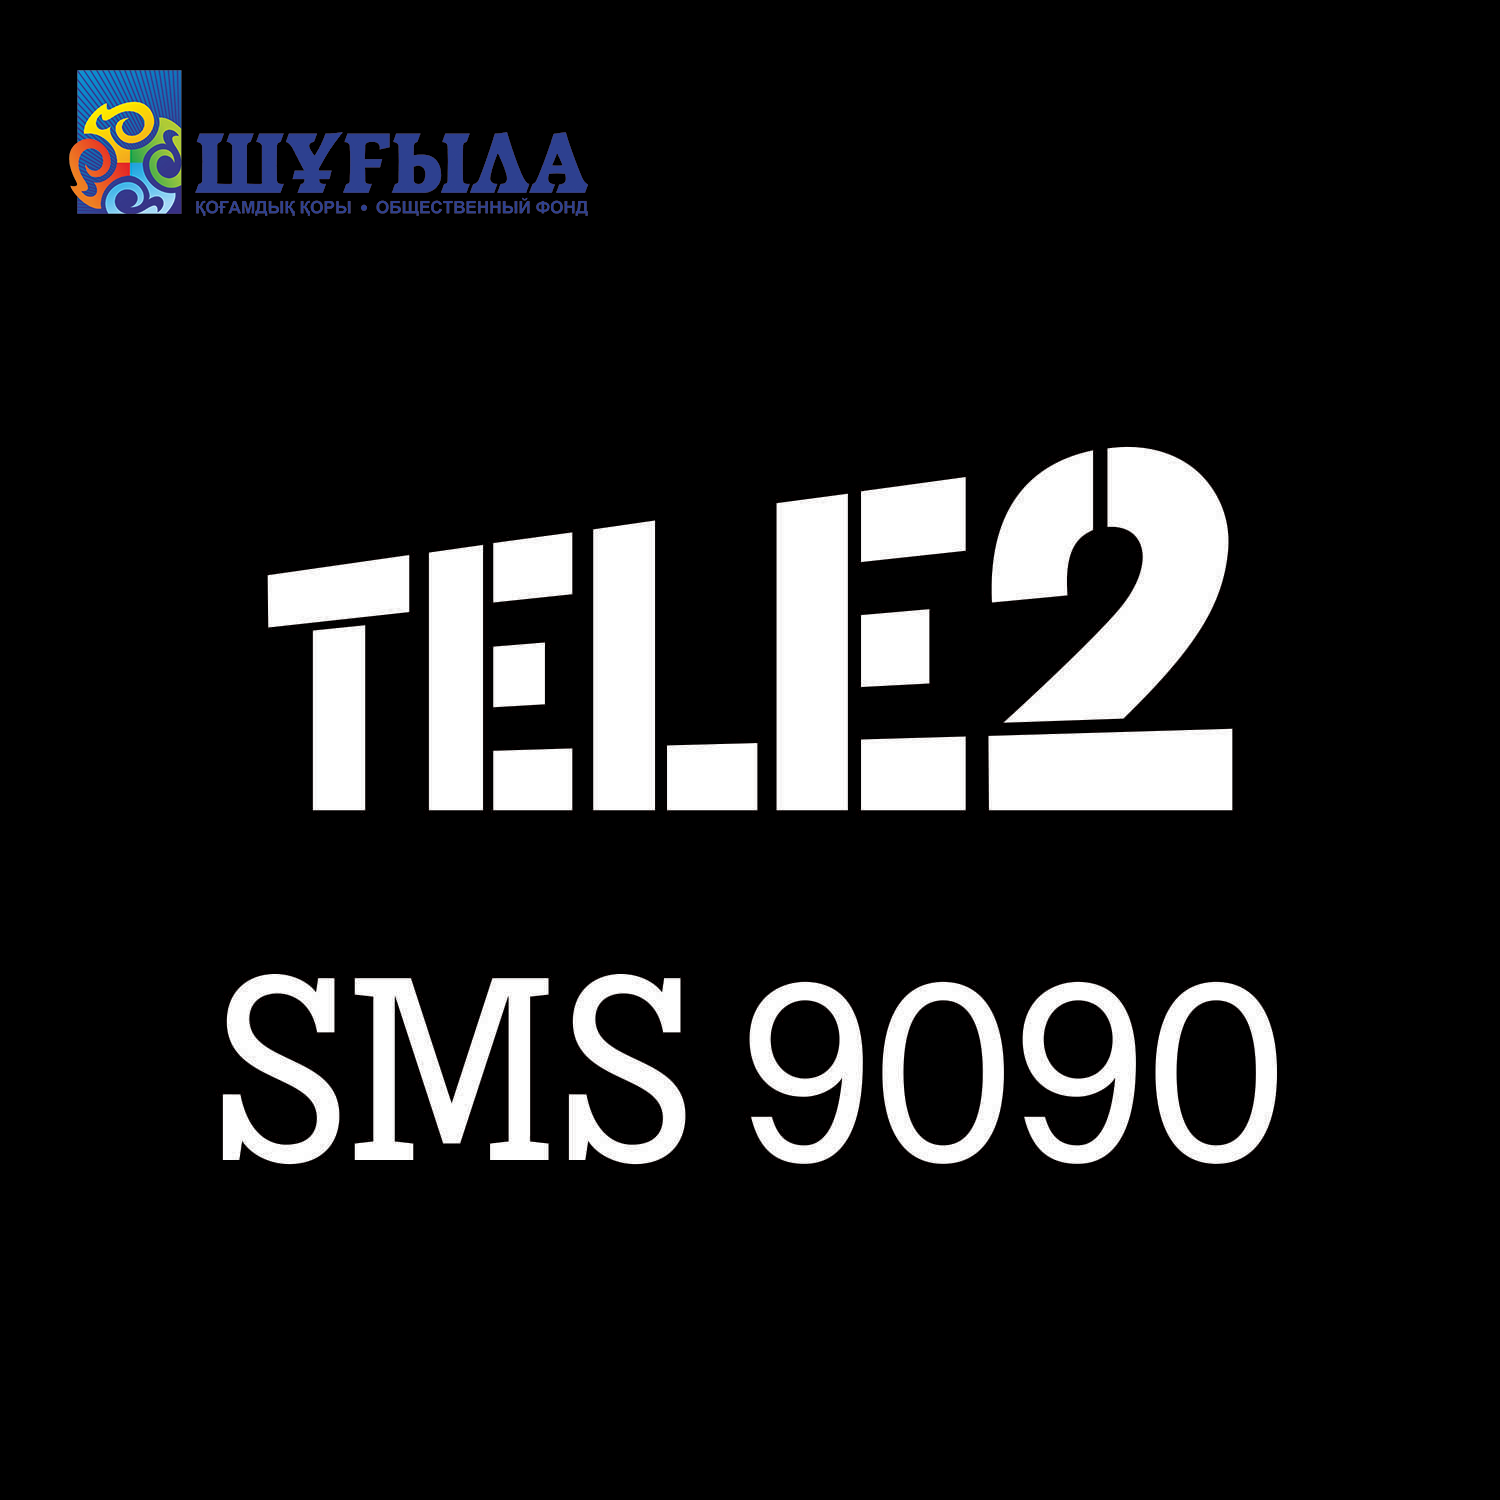 tele2-9090